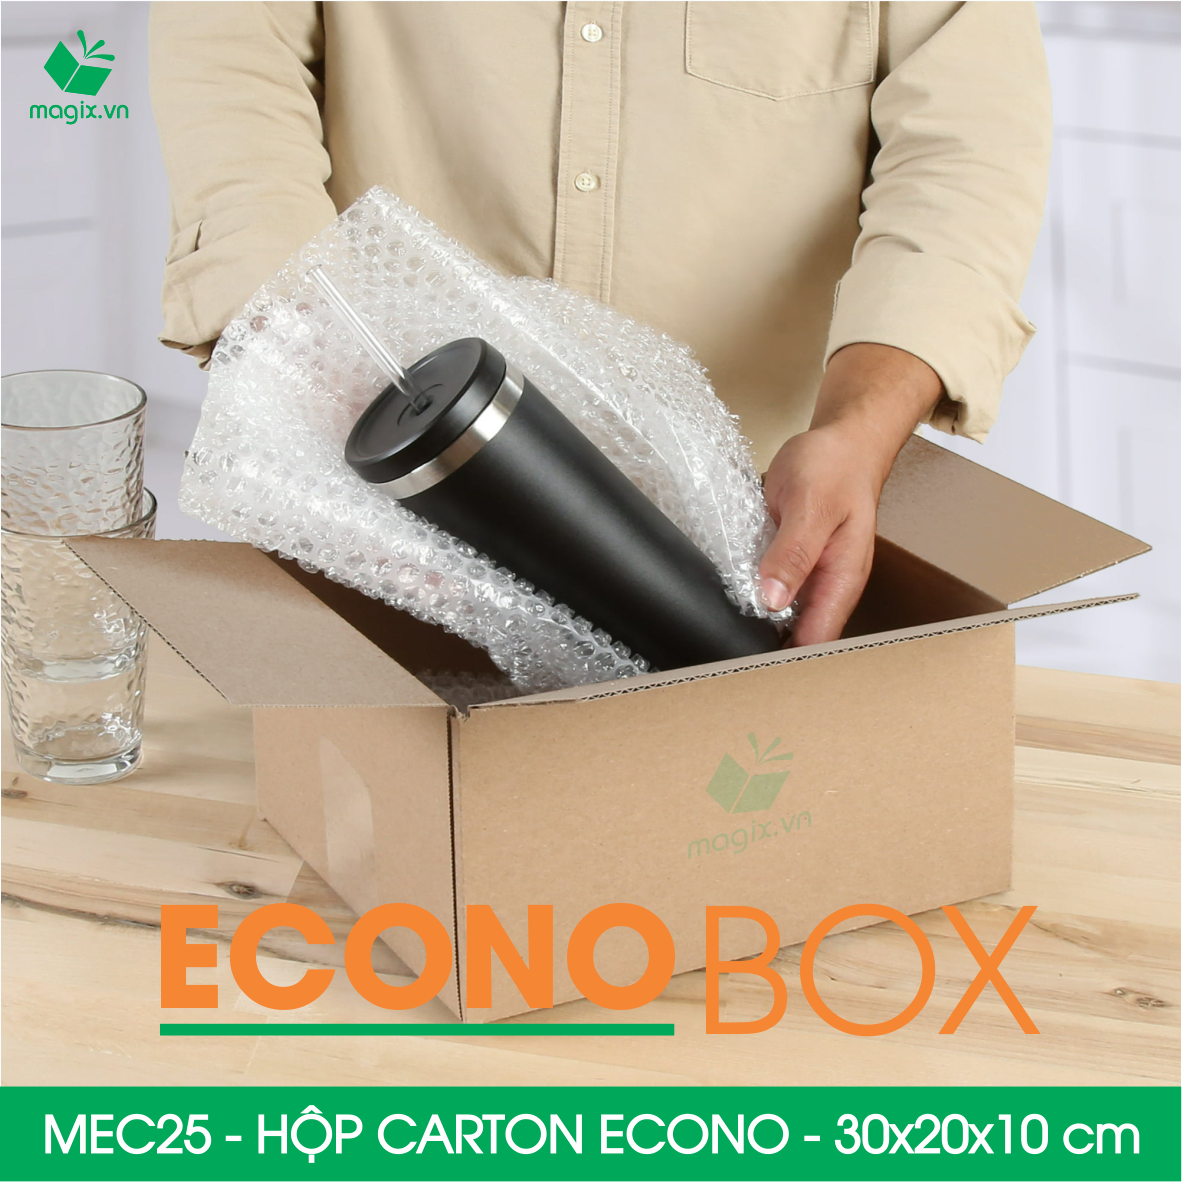 MEC25 - 30x20x10 cm - Combo 20 thùng hộp carton trơn siêu tiết kiệm ECONO